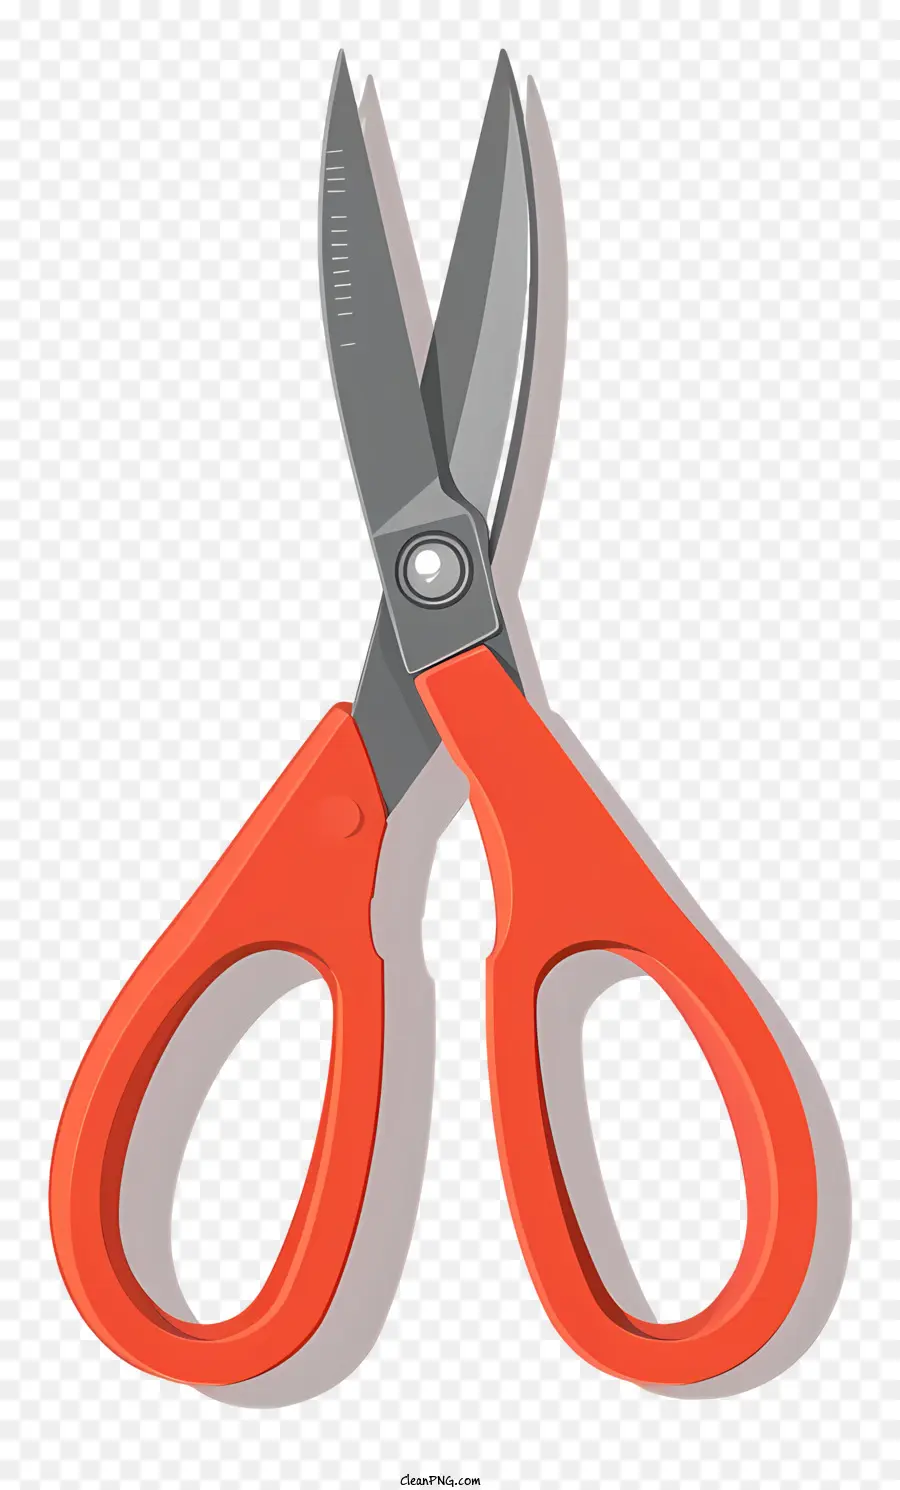 Kéo màu cam kéo và xé tay cầm màu đen - Kéo màu cam được sử dụng tốt với lưỡi dao xỉn